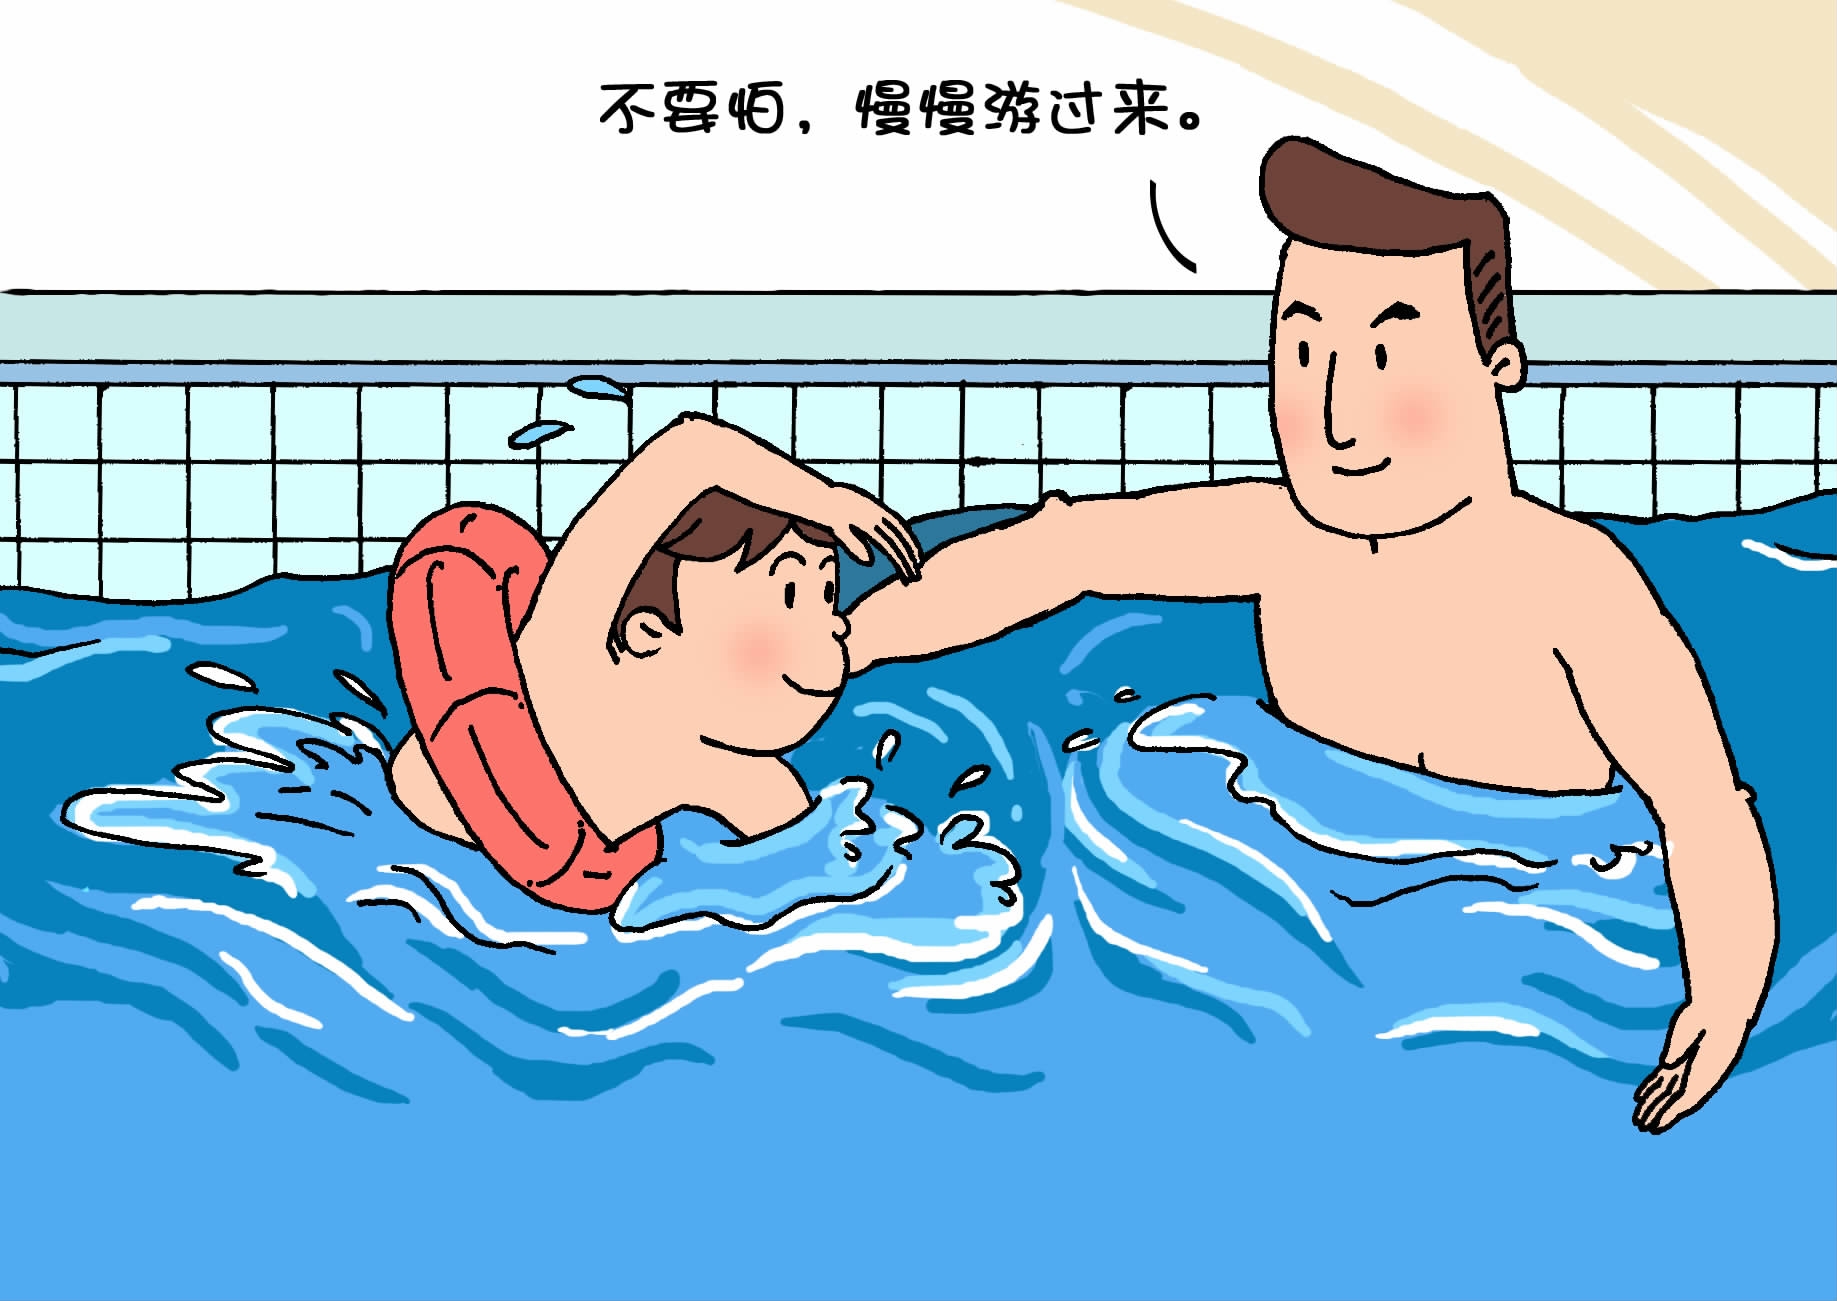 学游泳须有家长陪同,要留心泳池周边安全.